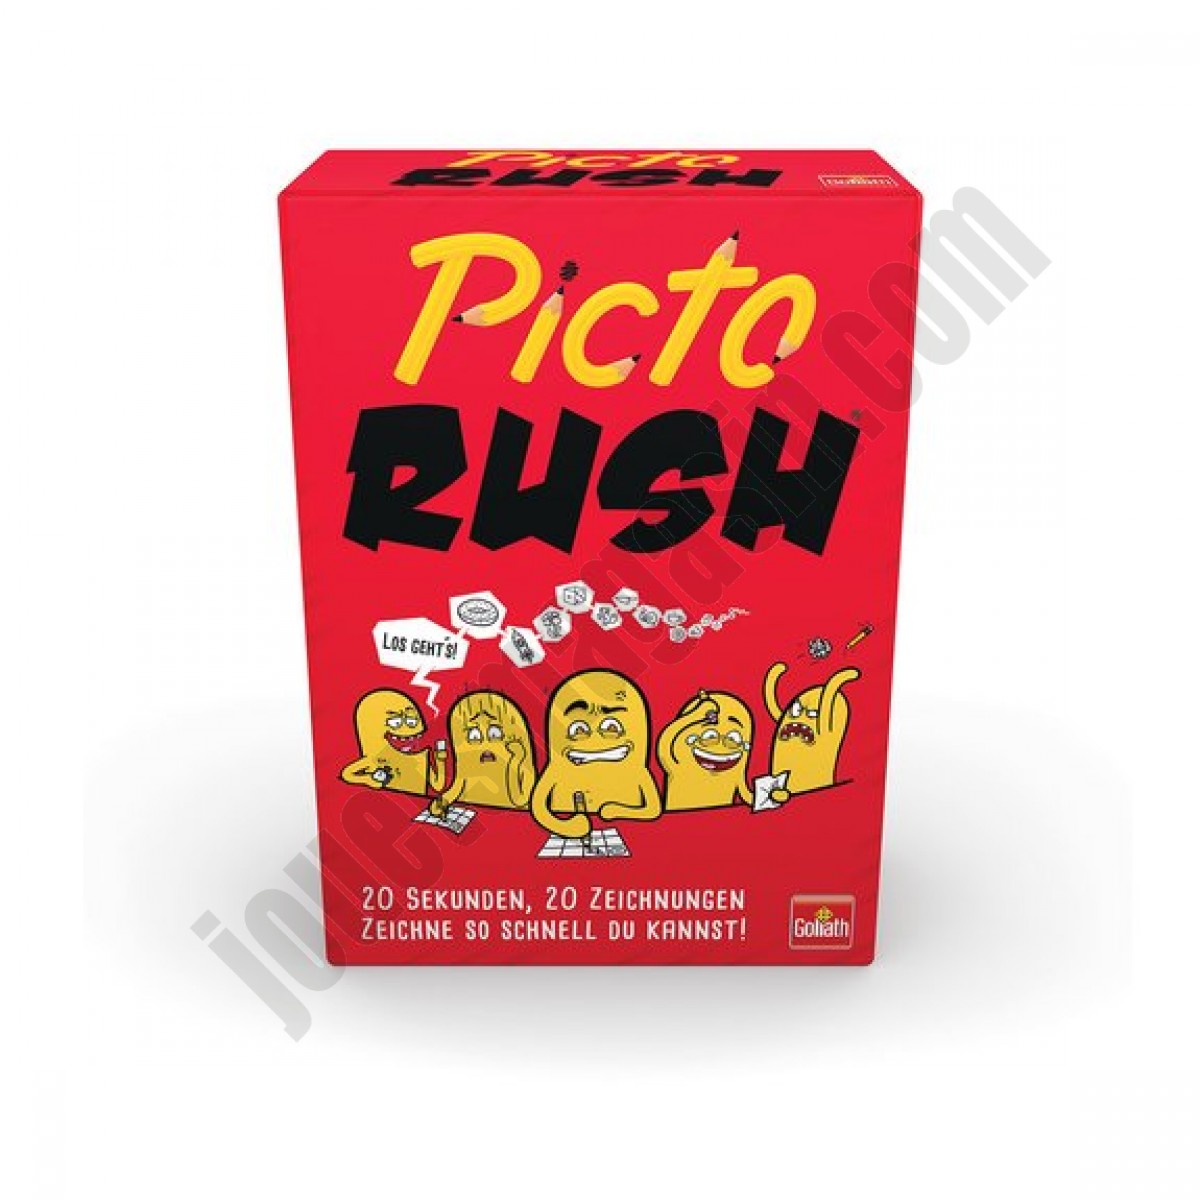 Picto Rush En promotion - Picto Rush En promotion